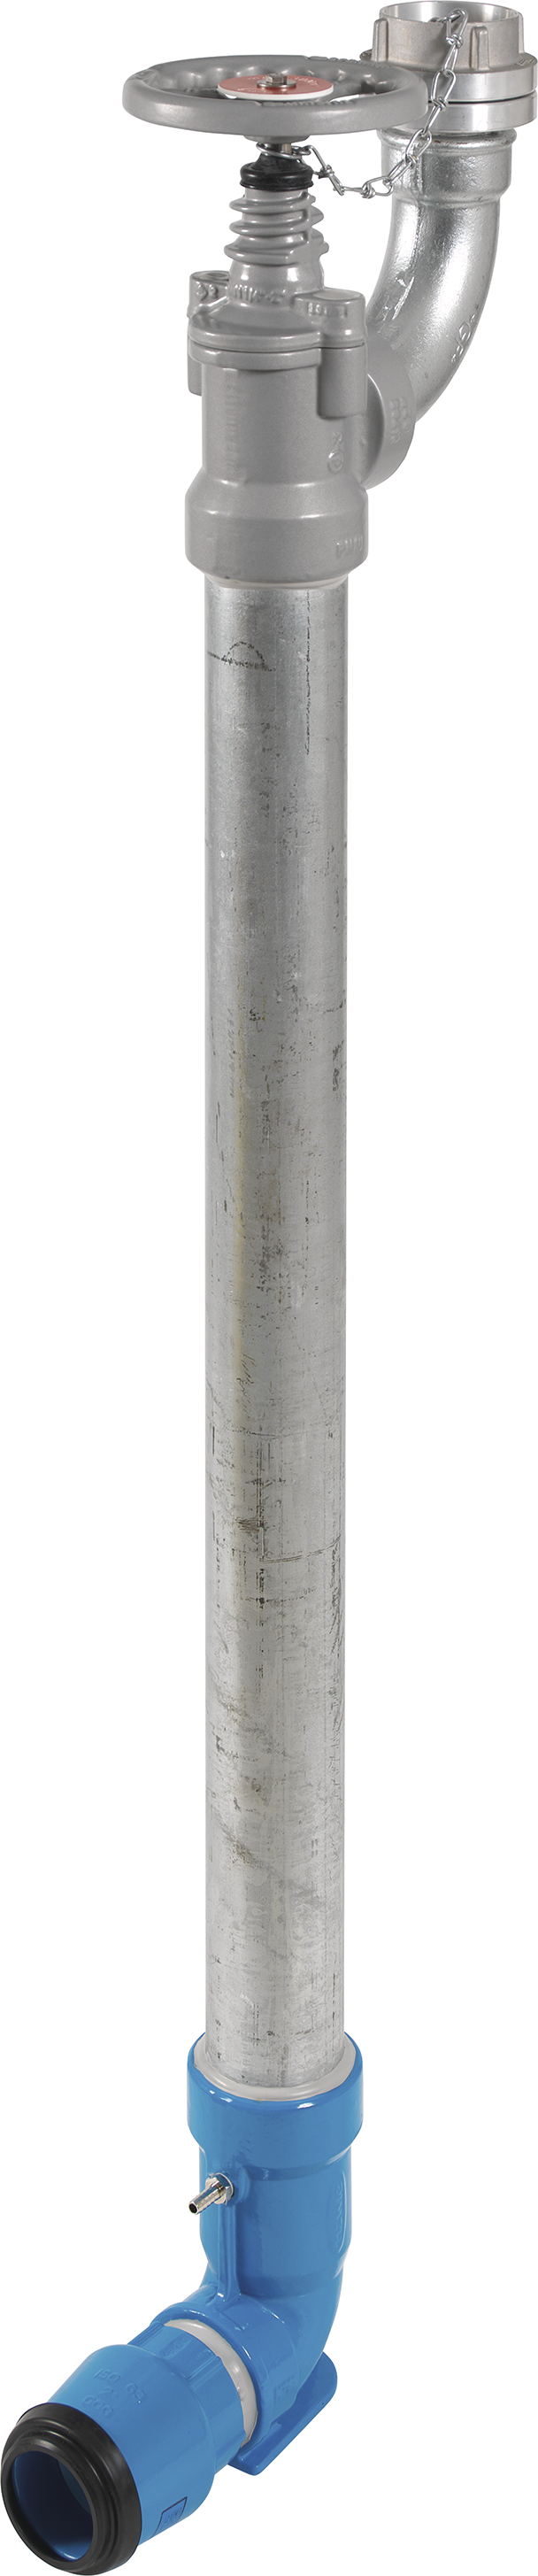 Bewässerungshydrant Unterflur N767 d 63mm, L = 1000mm - Hawle Hydranten